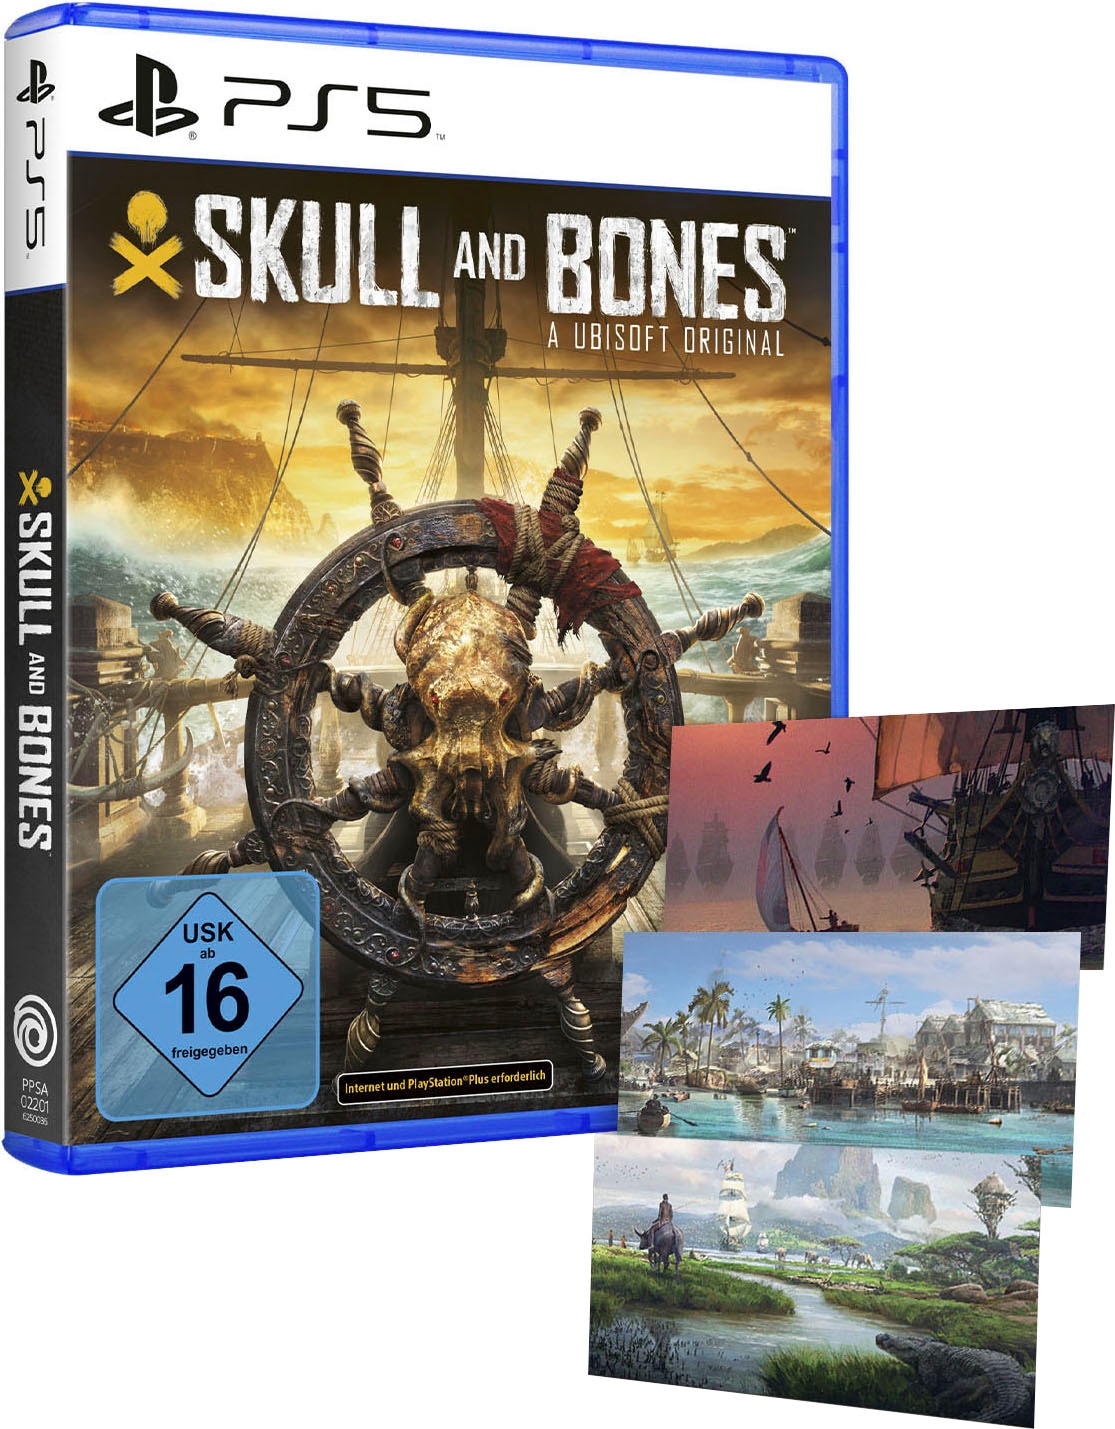  Skull and Bones - Standard Edition, PlayStation 5